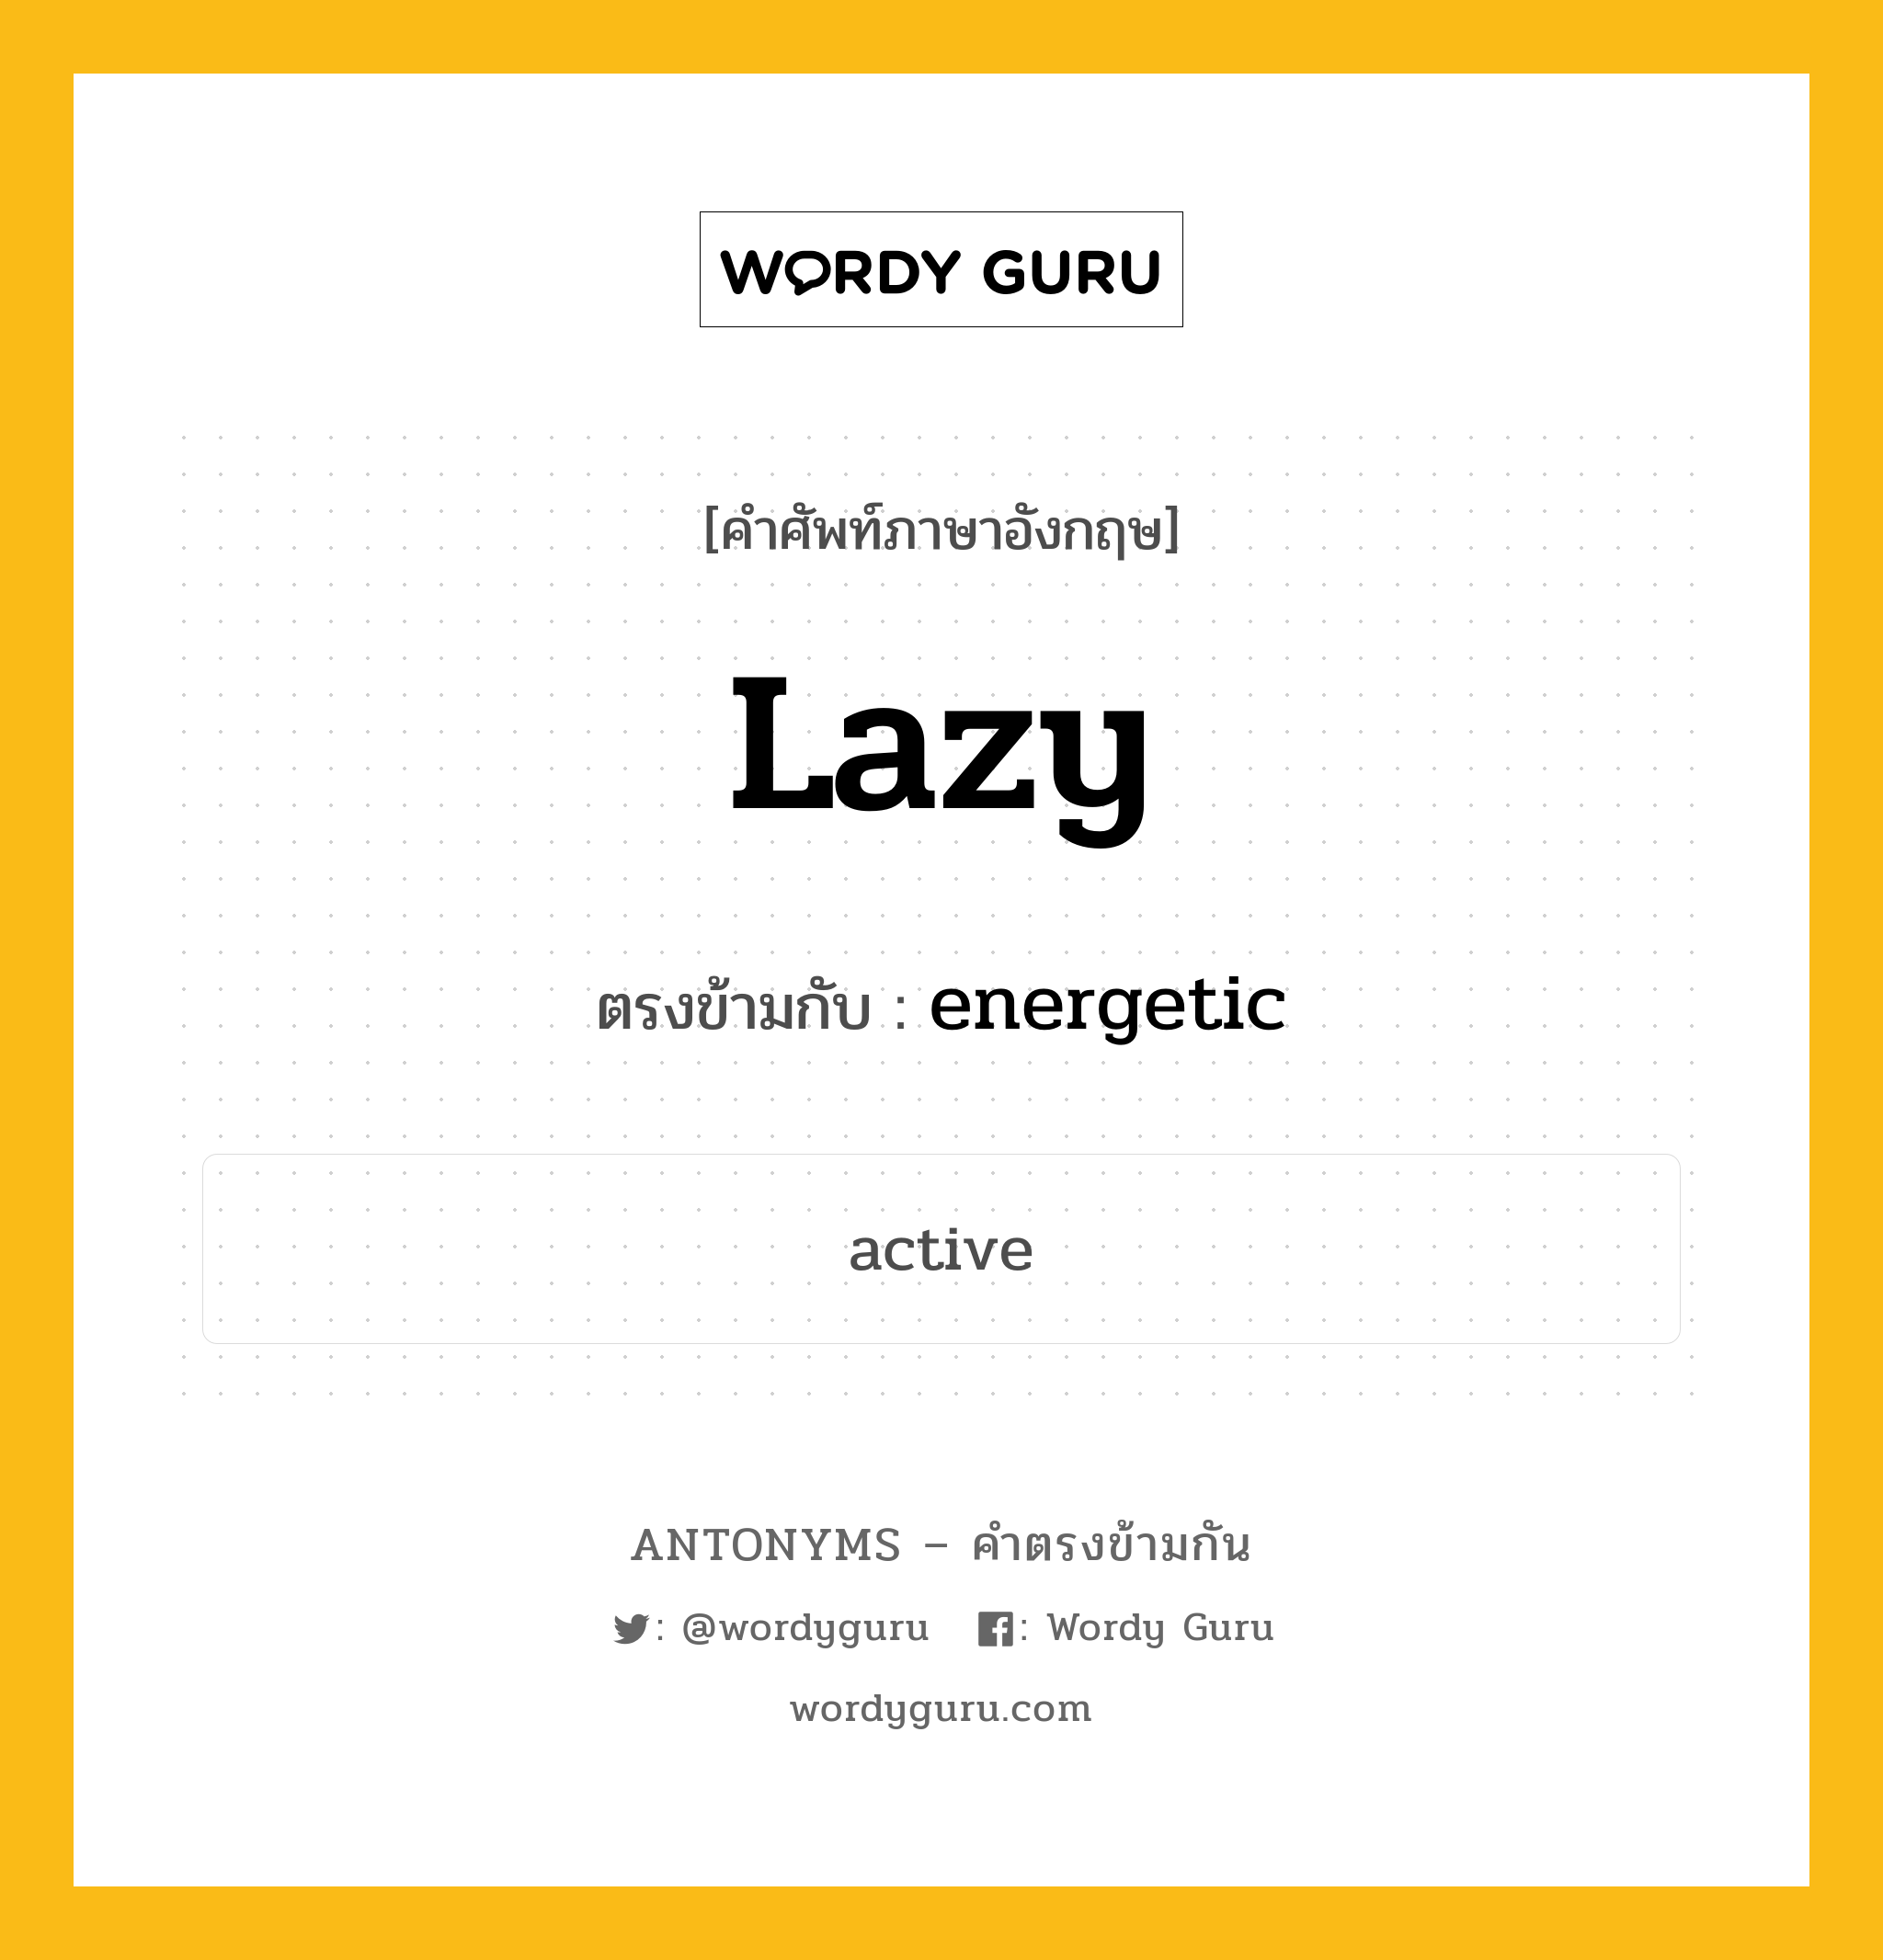 lazy เป็นคำตรงข้ามกับคำไหนบ้าง?, คำศัพท์ภาษาอังกฤษ lazy ตรงข้ามกับ energetic หมวด energetic